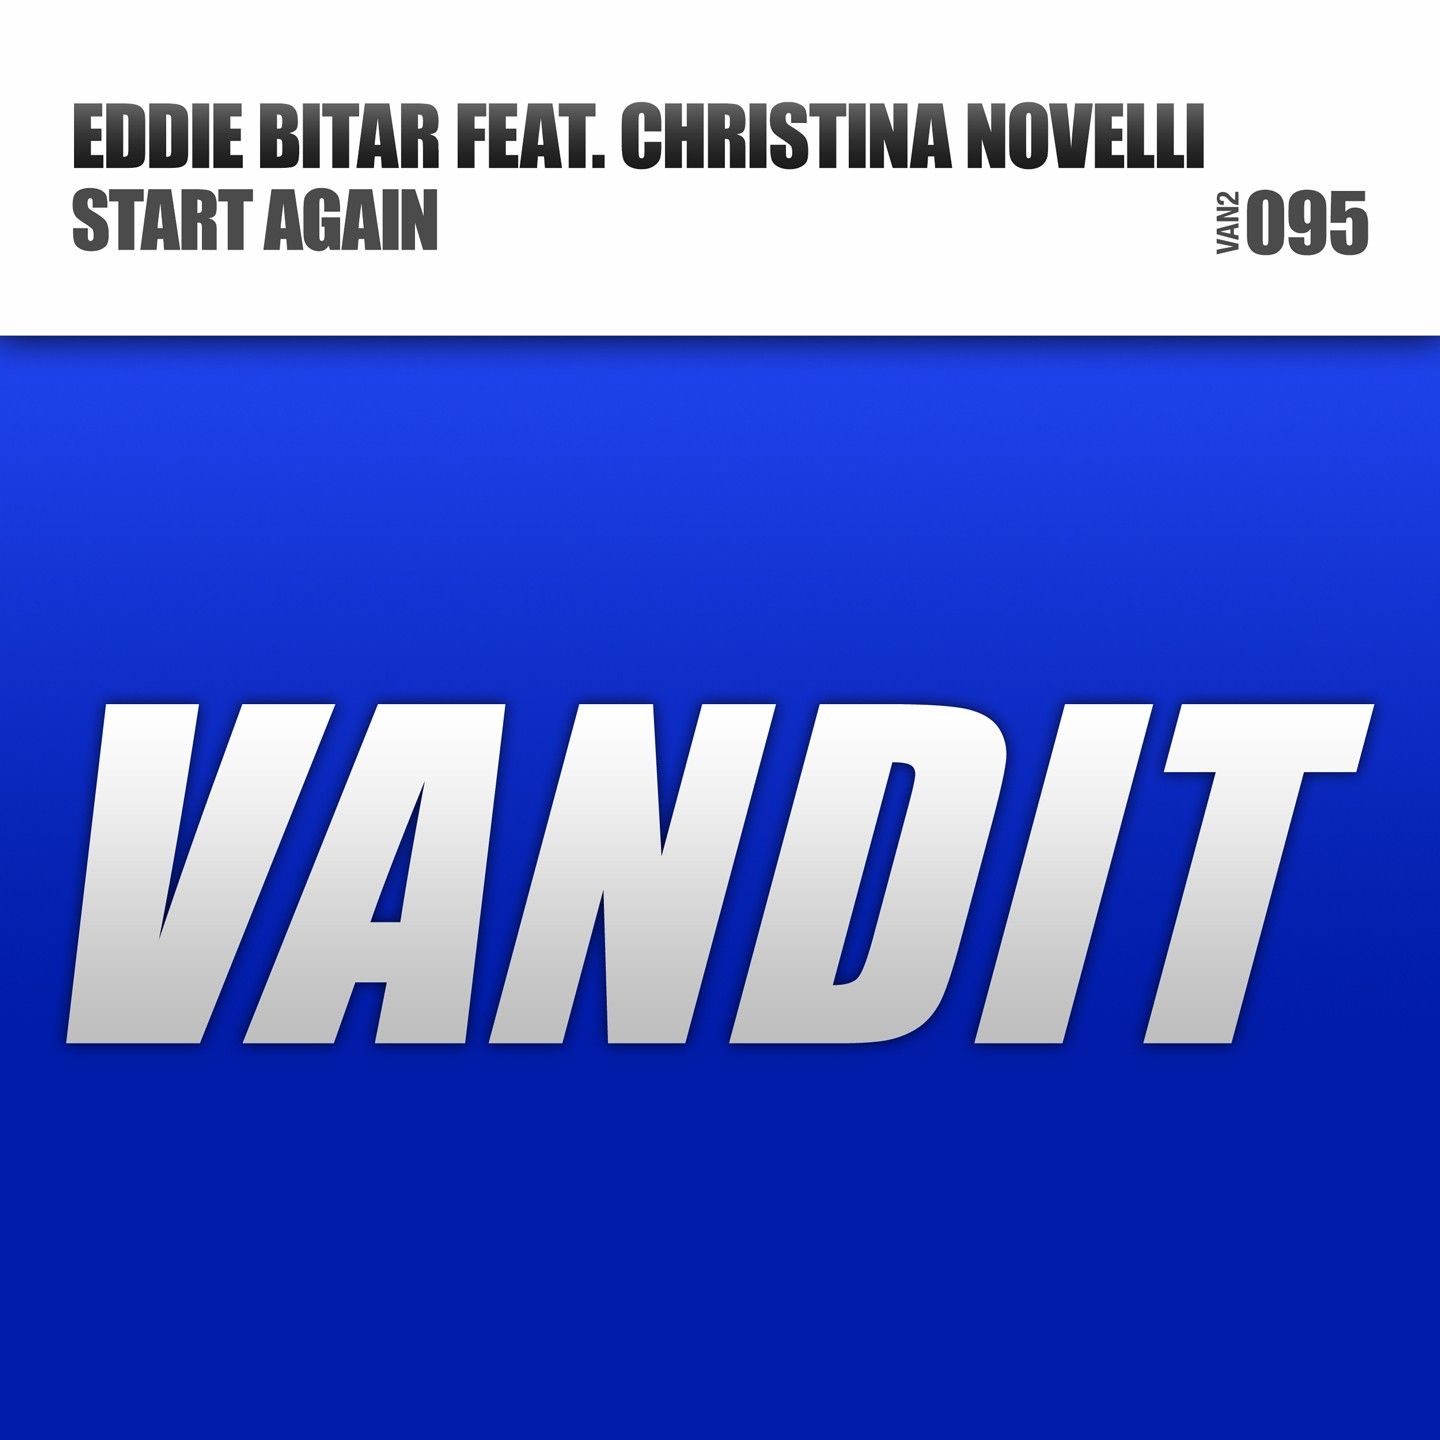 eddie-bitar-feat.christina-novelli-start-again.jpg